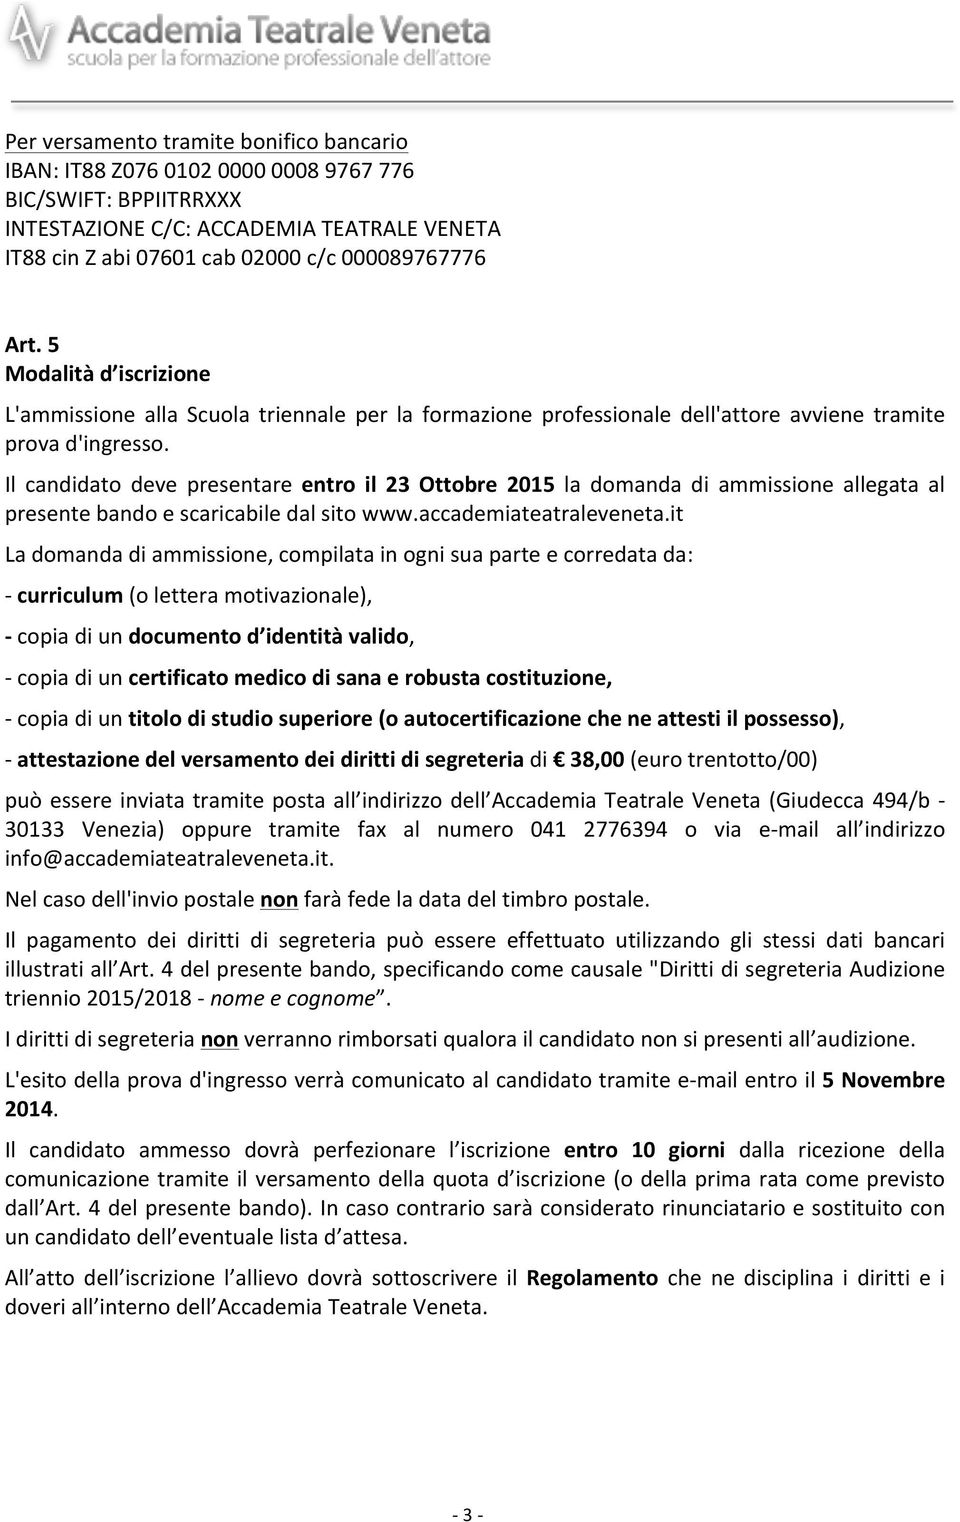 Il candidato deve presentare entro il 23 Ottobre 2015 la domanda di ammissione allegata al presente bando e scaricabile dal sito www.accademiateatraleveneta.